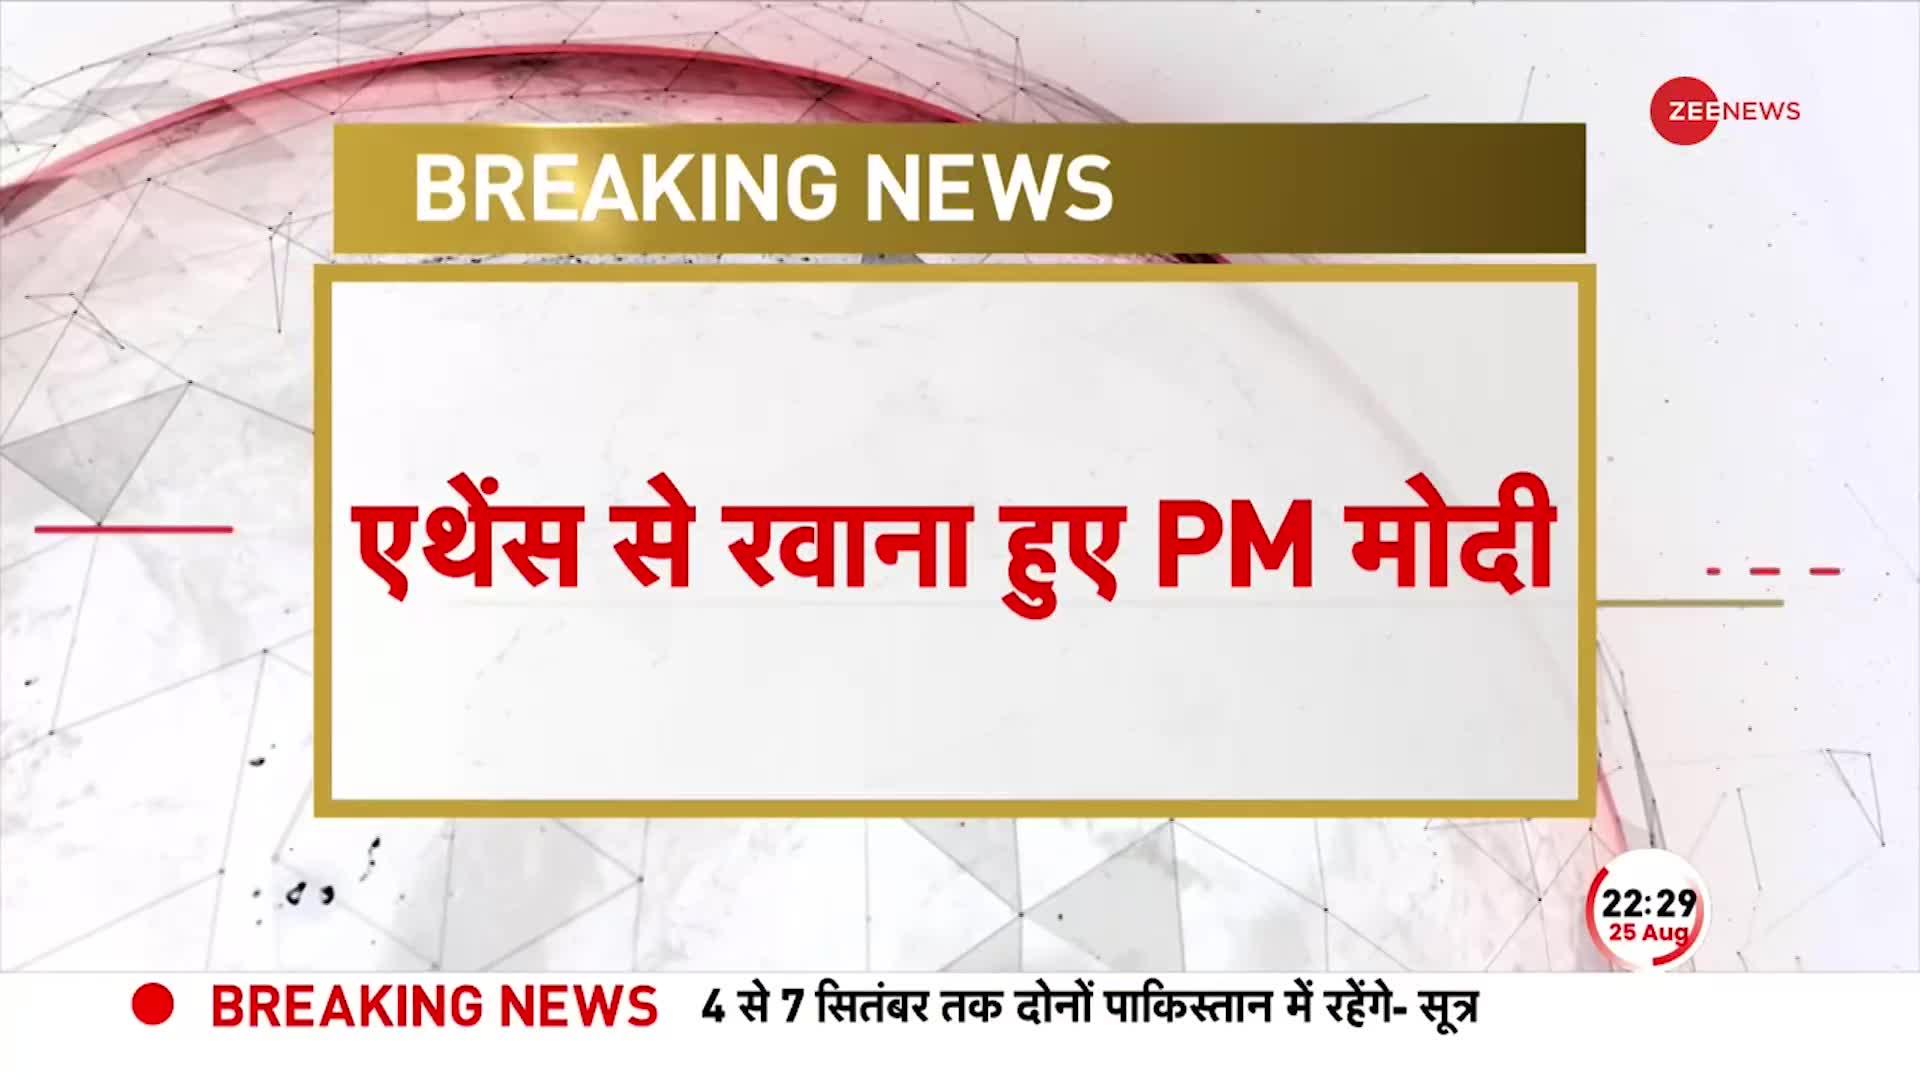 PM MODI BREAKING: Greece के एकदिवसीय दौरे के बाद रवाना हुए PM Modi, खत्म हुआ प्रधानमंत्री का दौरा